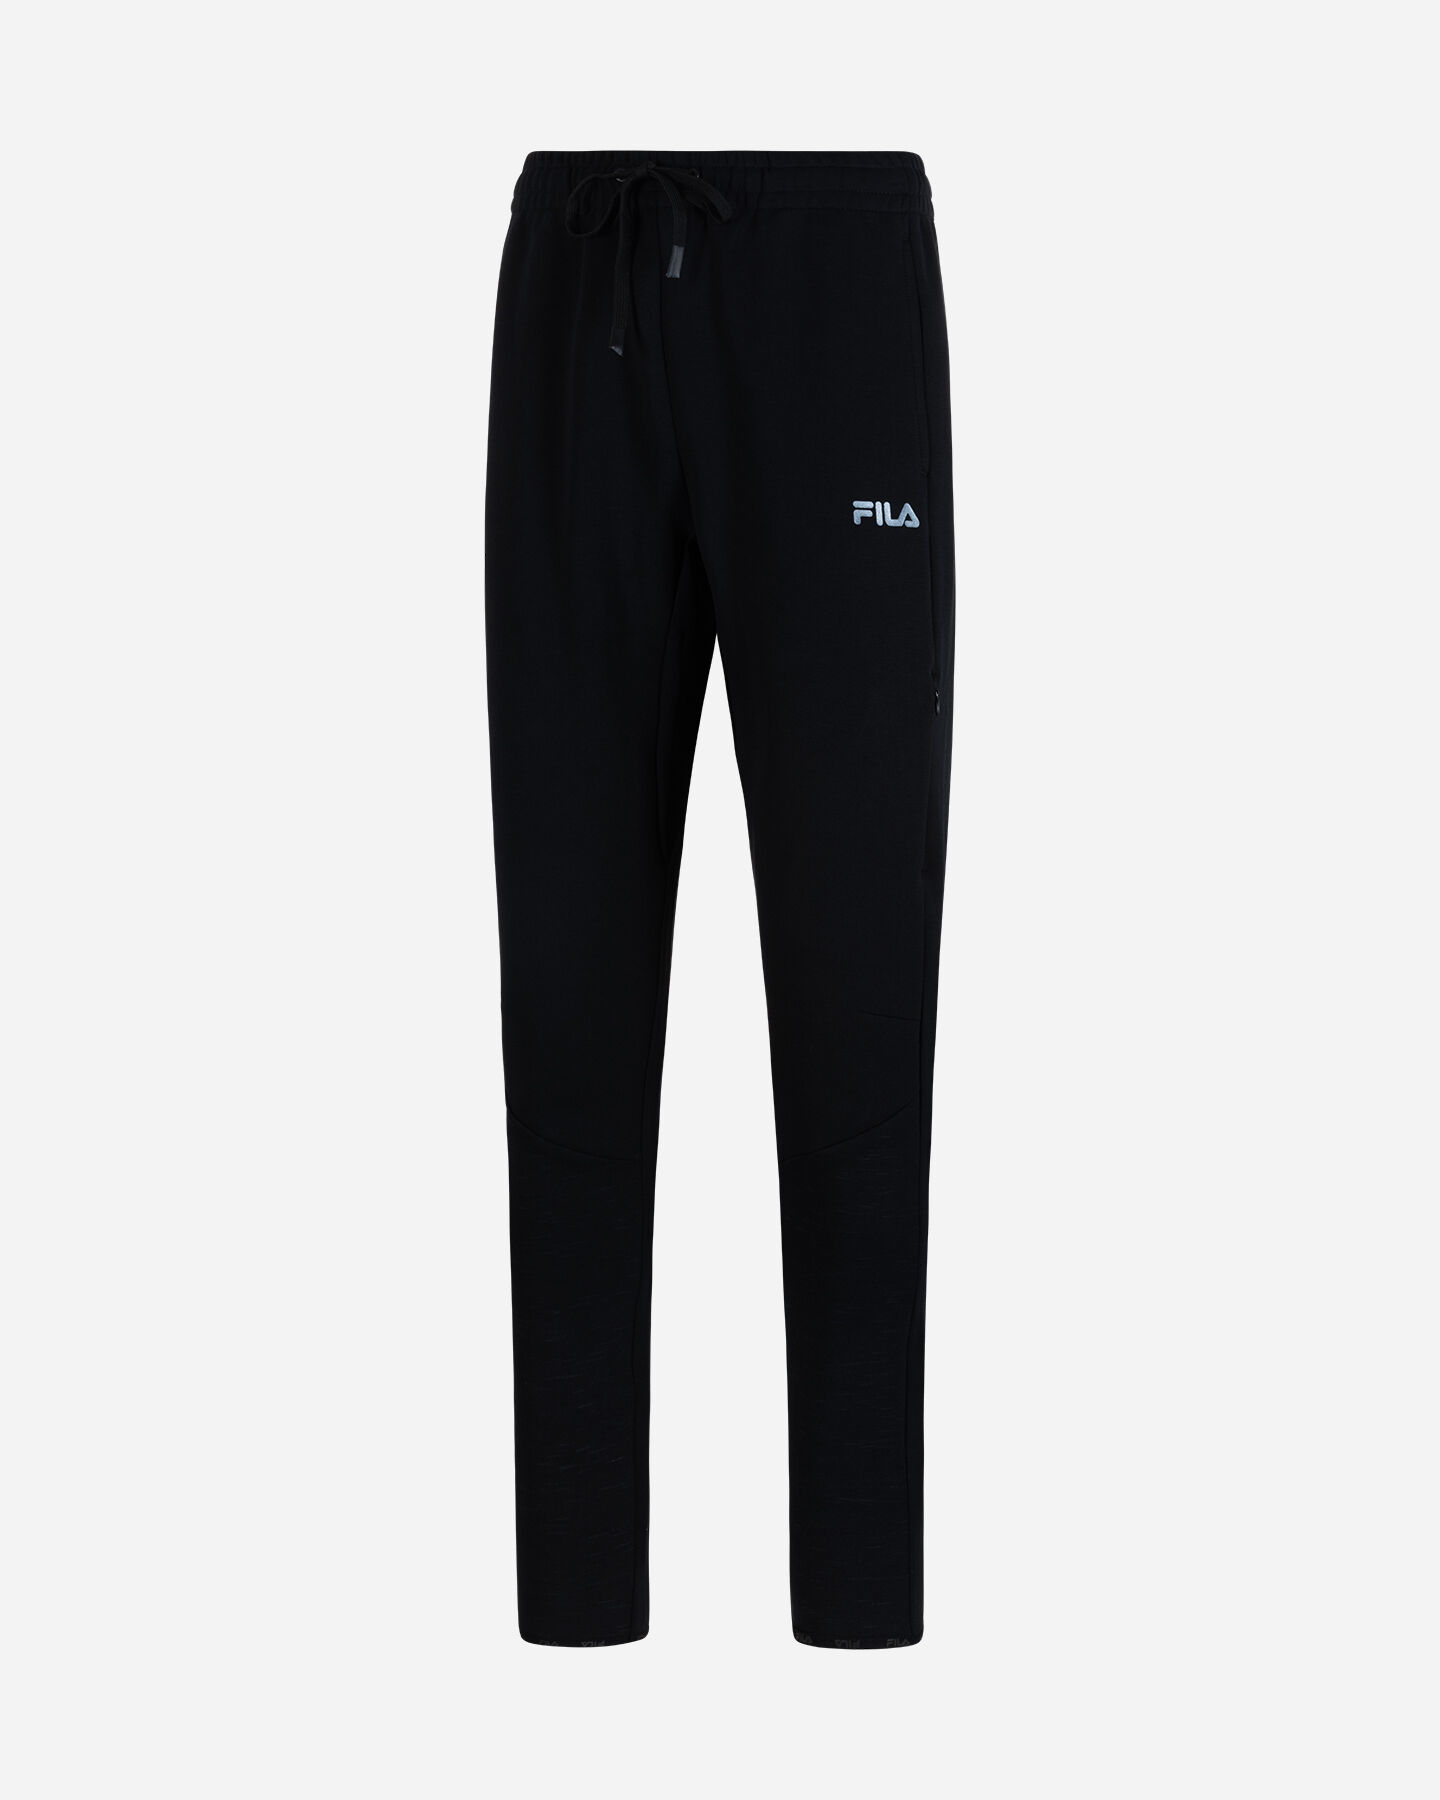  Pantalone FILA SPORT PREMIUM M S4124890|050|M scatto 4